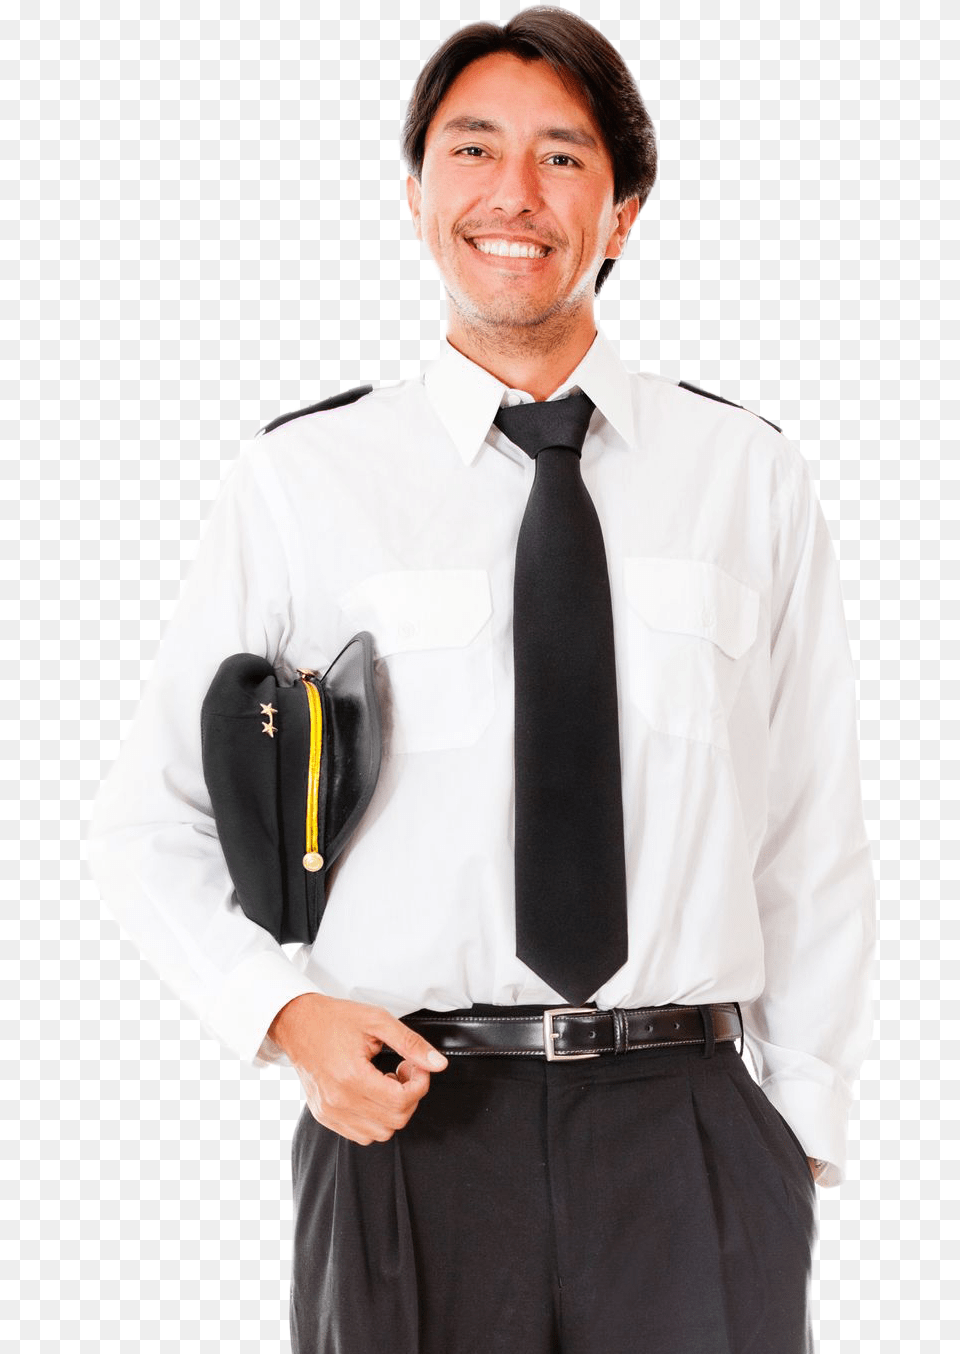 Airline Pilot 5 Pilot, Accessories, Shirt, Tie, Formal Wear Png Image